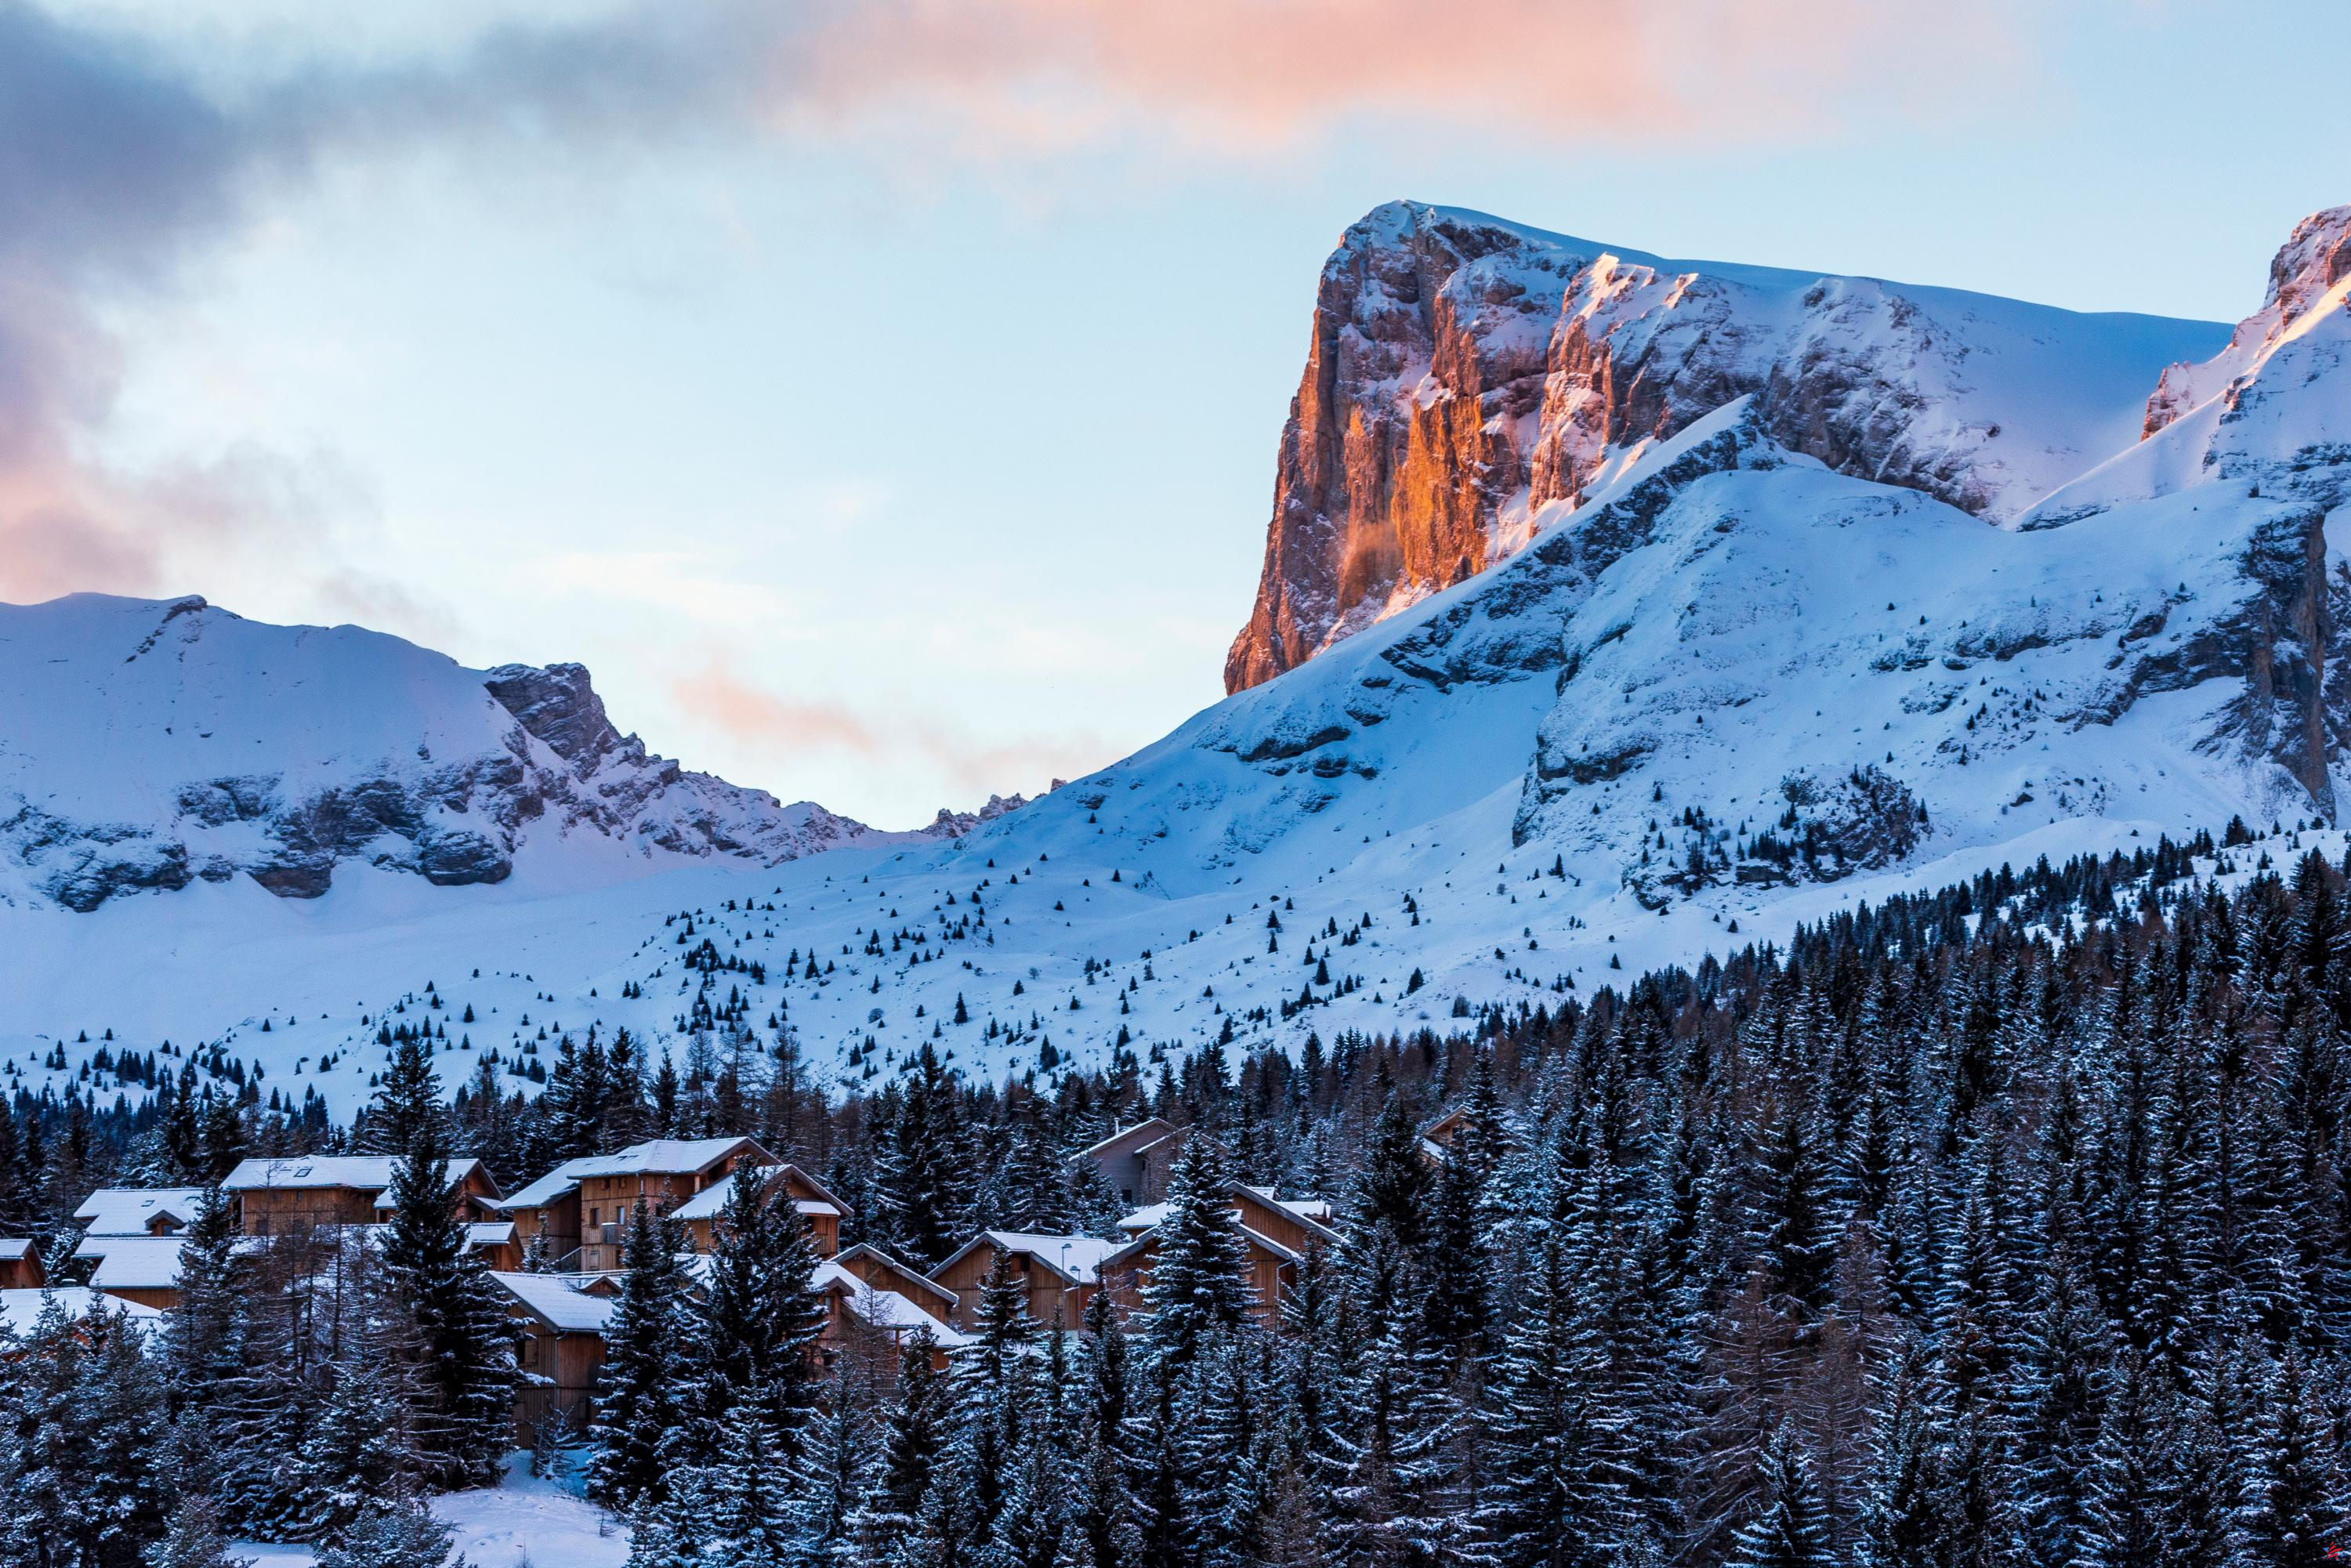 Nieve o no, este territorio alpino es ideal en invierno